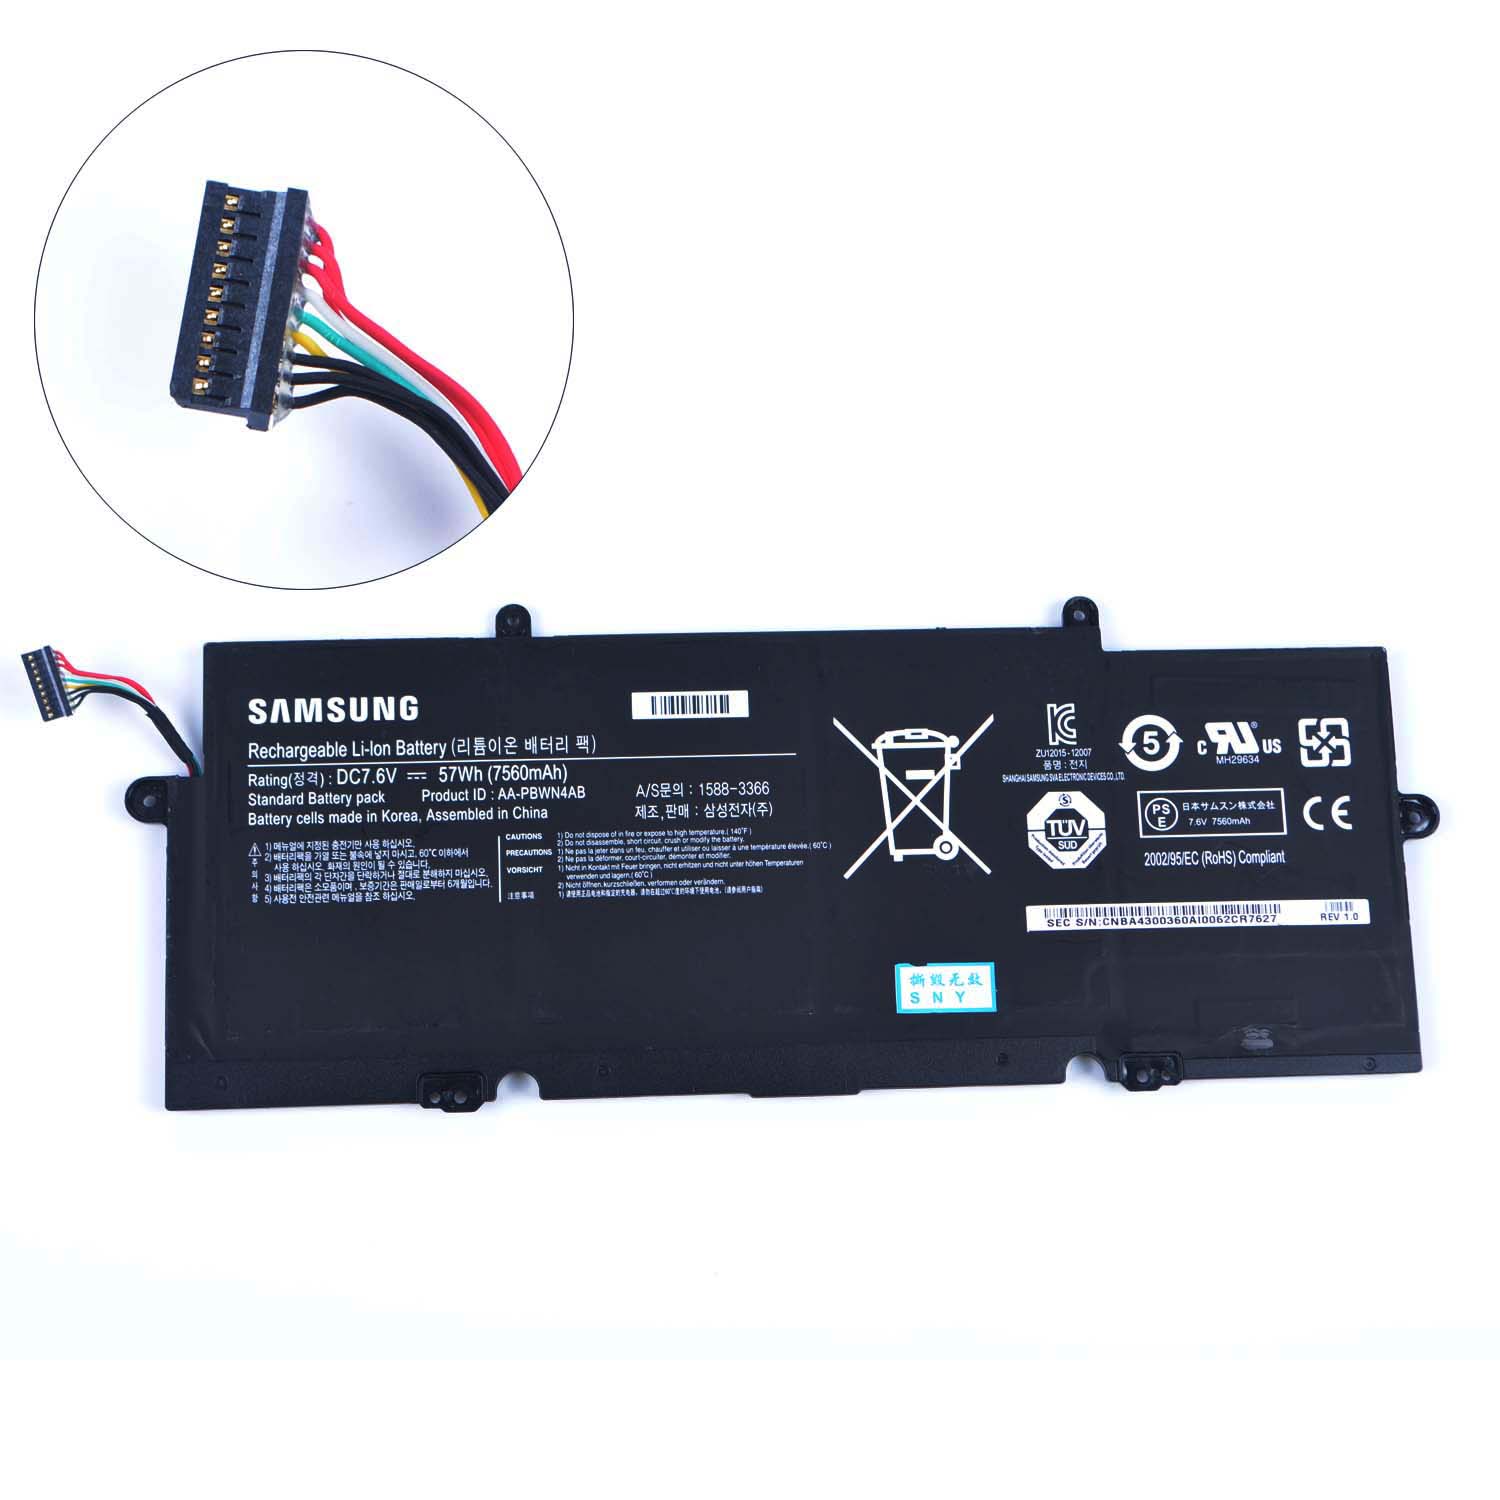 Samsung 740U3E-S01 batería